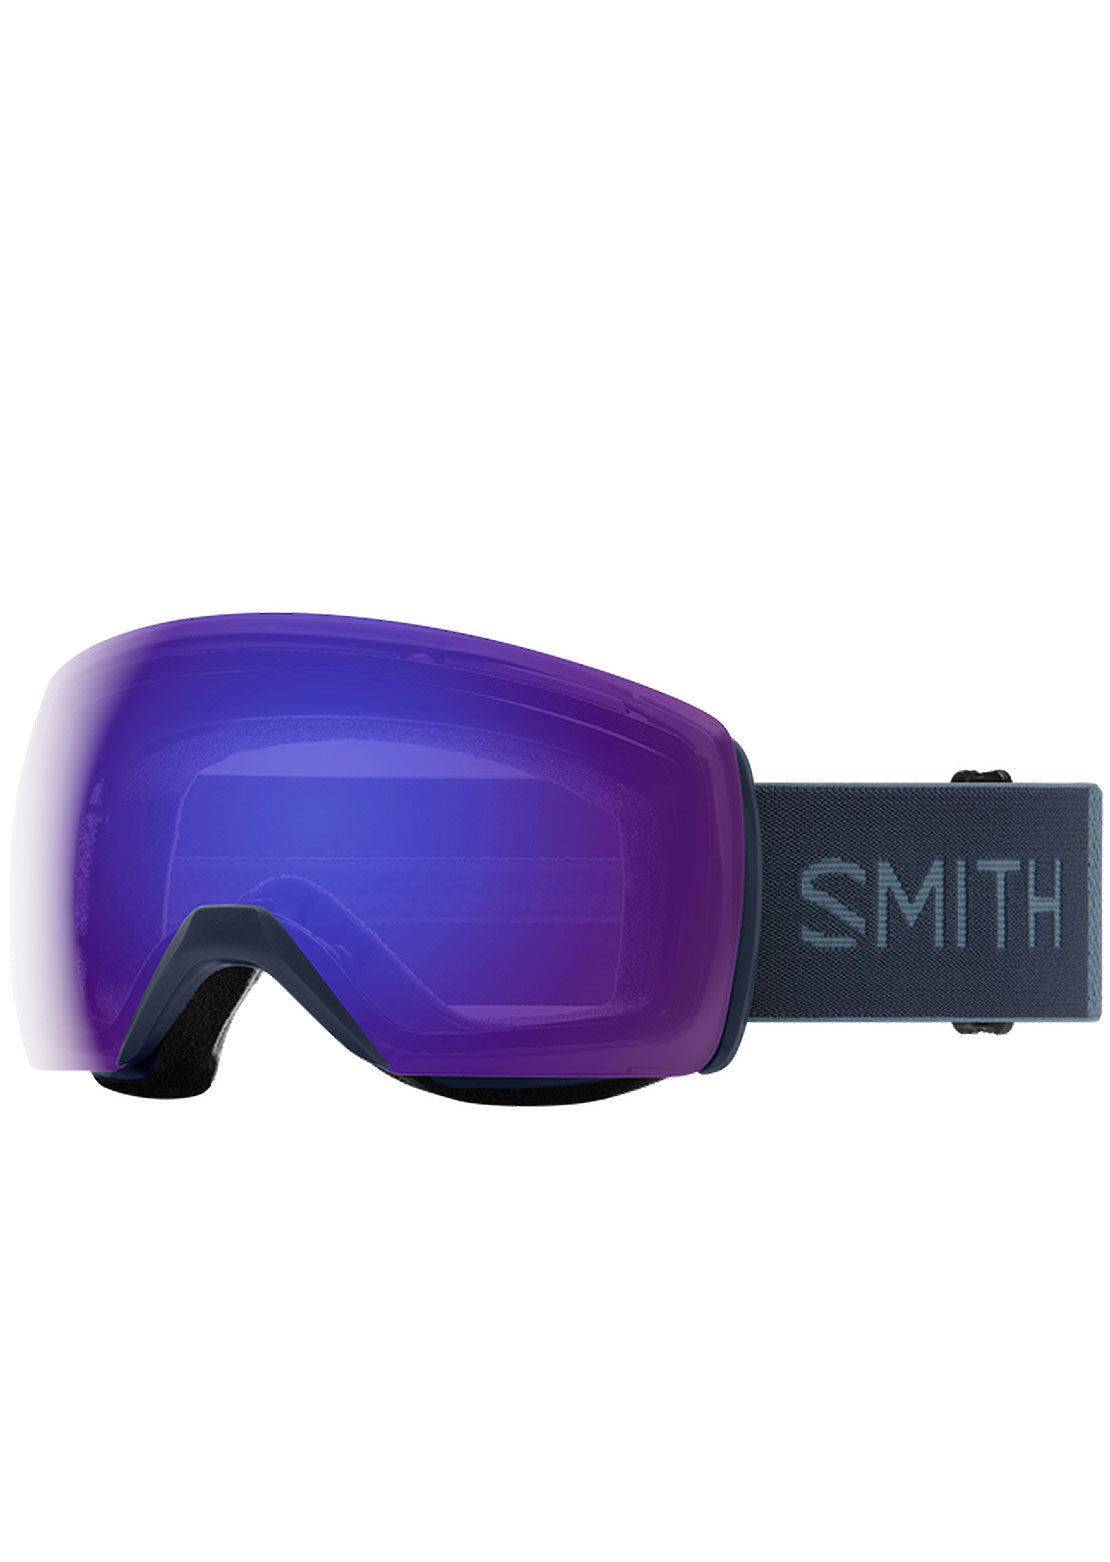 Smith Skyline XL Goggles French Navy/Chromapop Everyday Violet Mirror